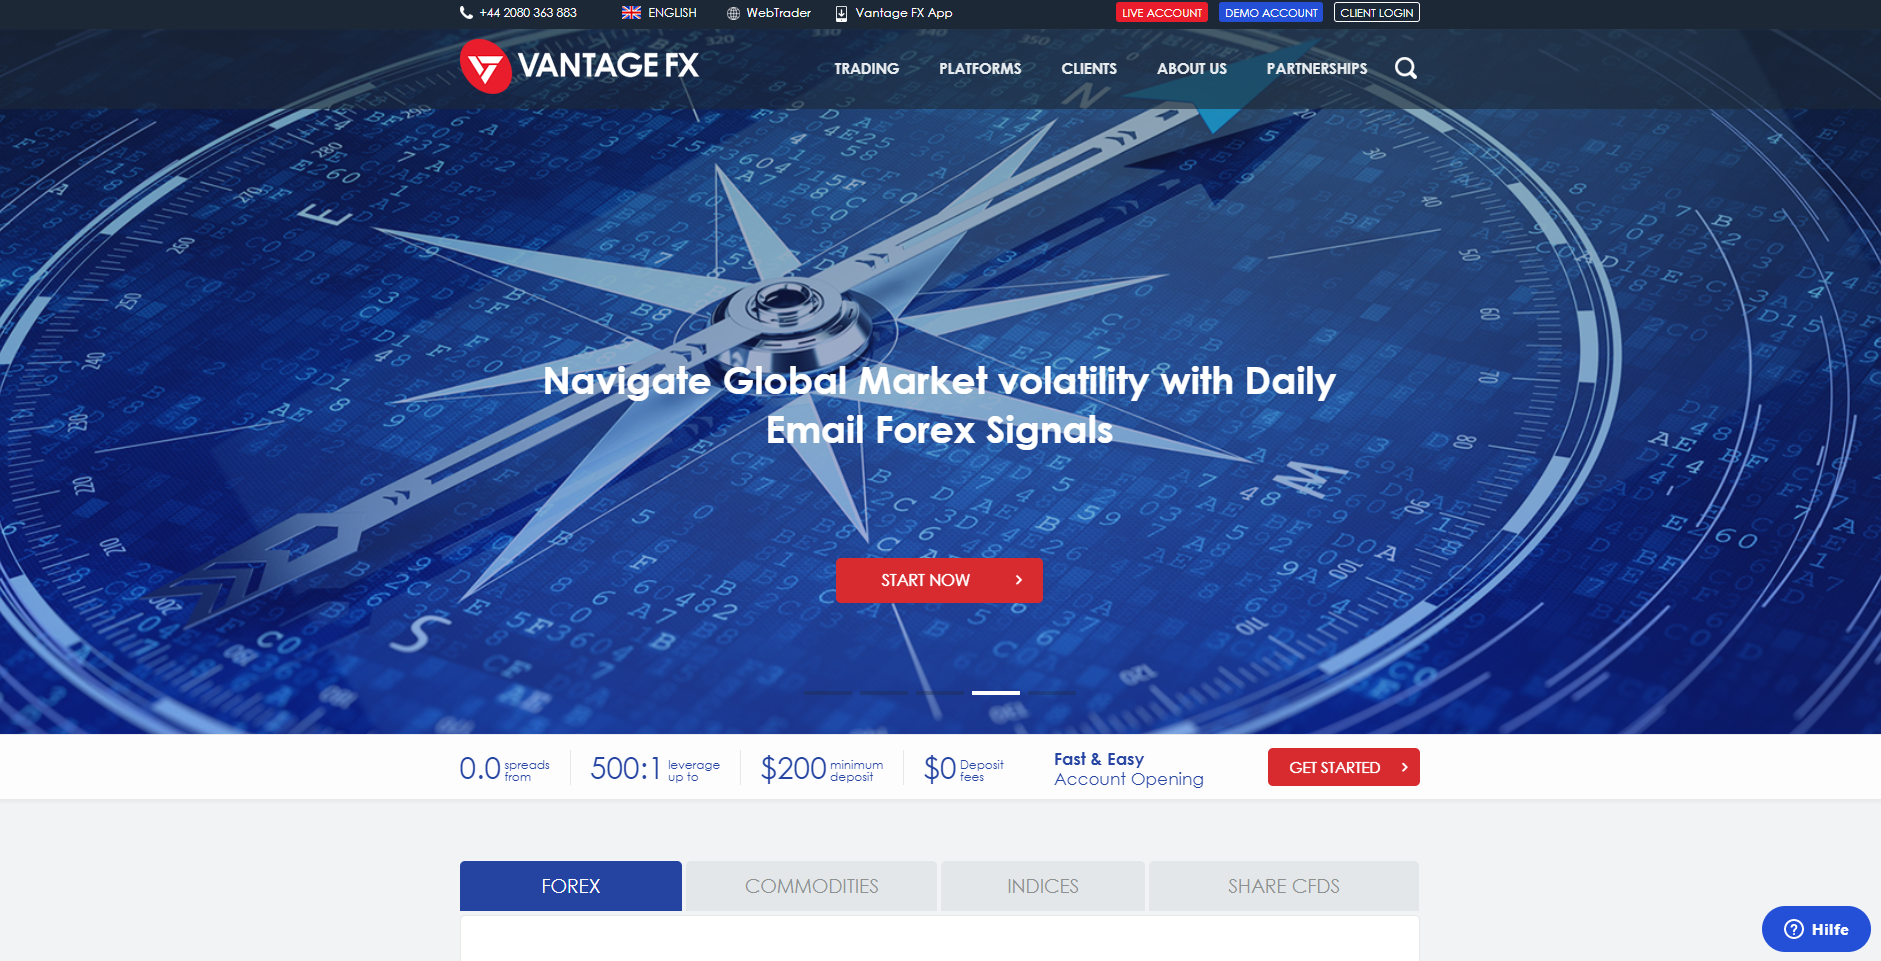 Vantage FX website